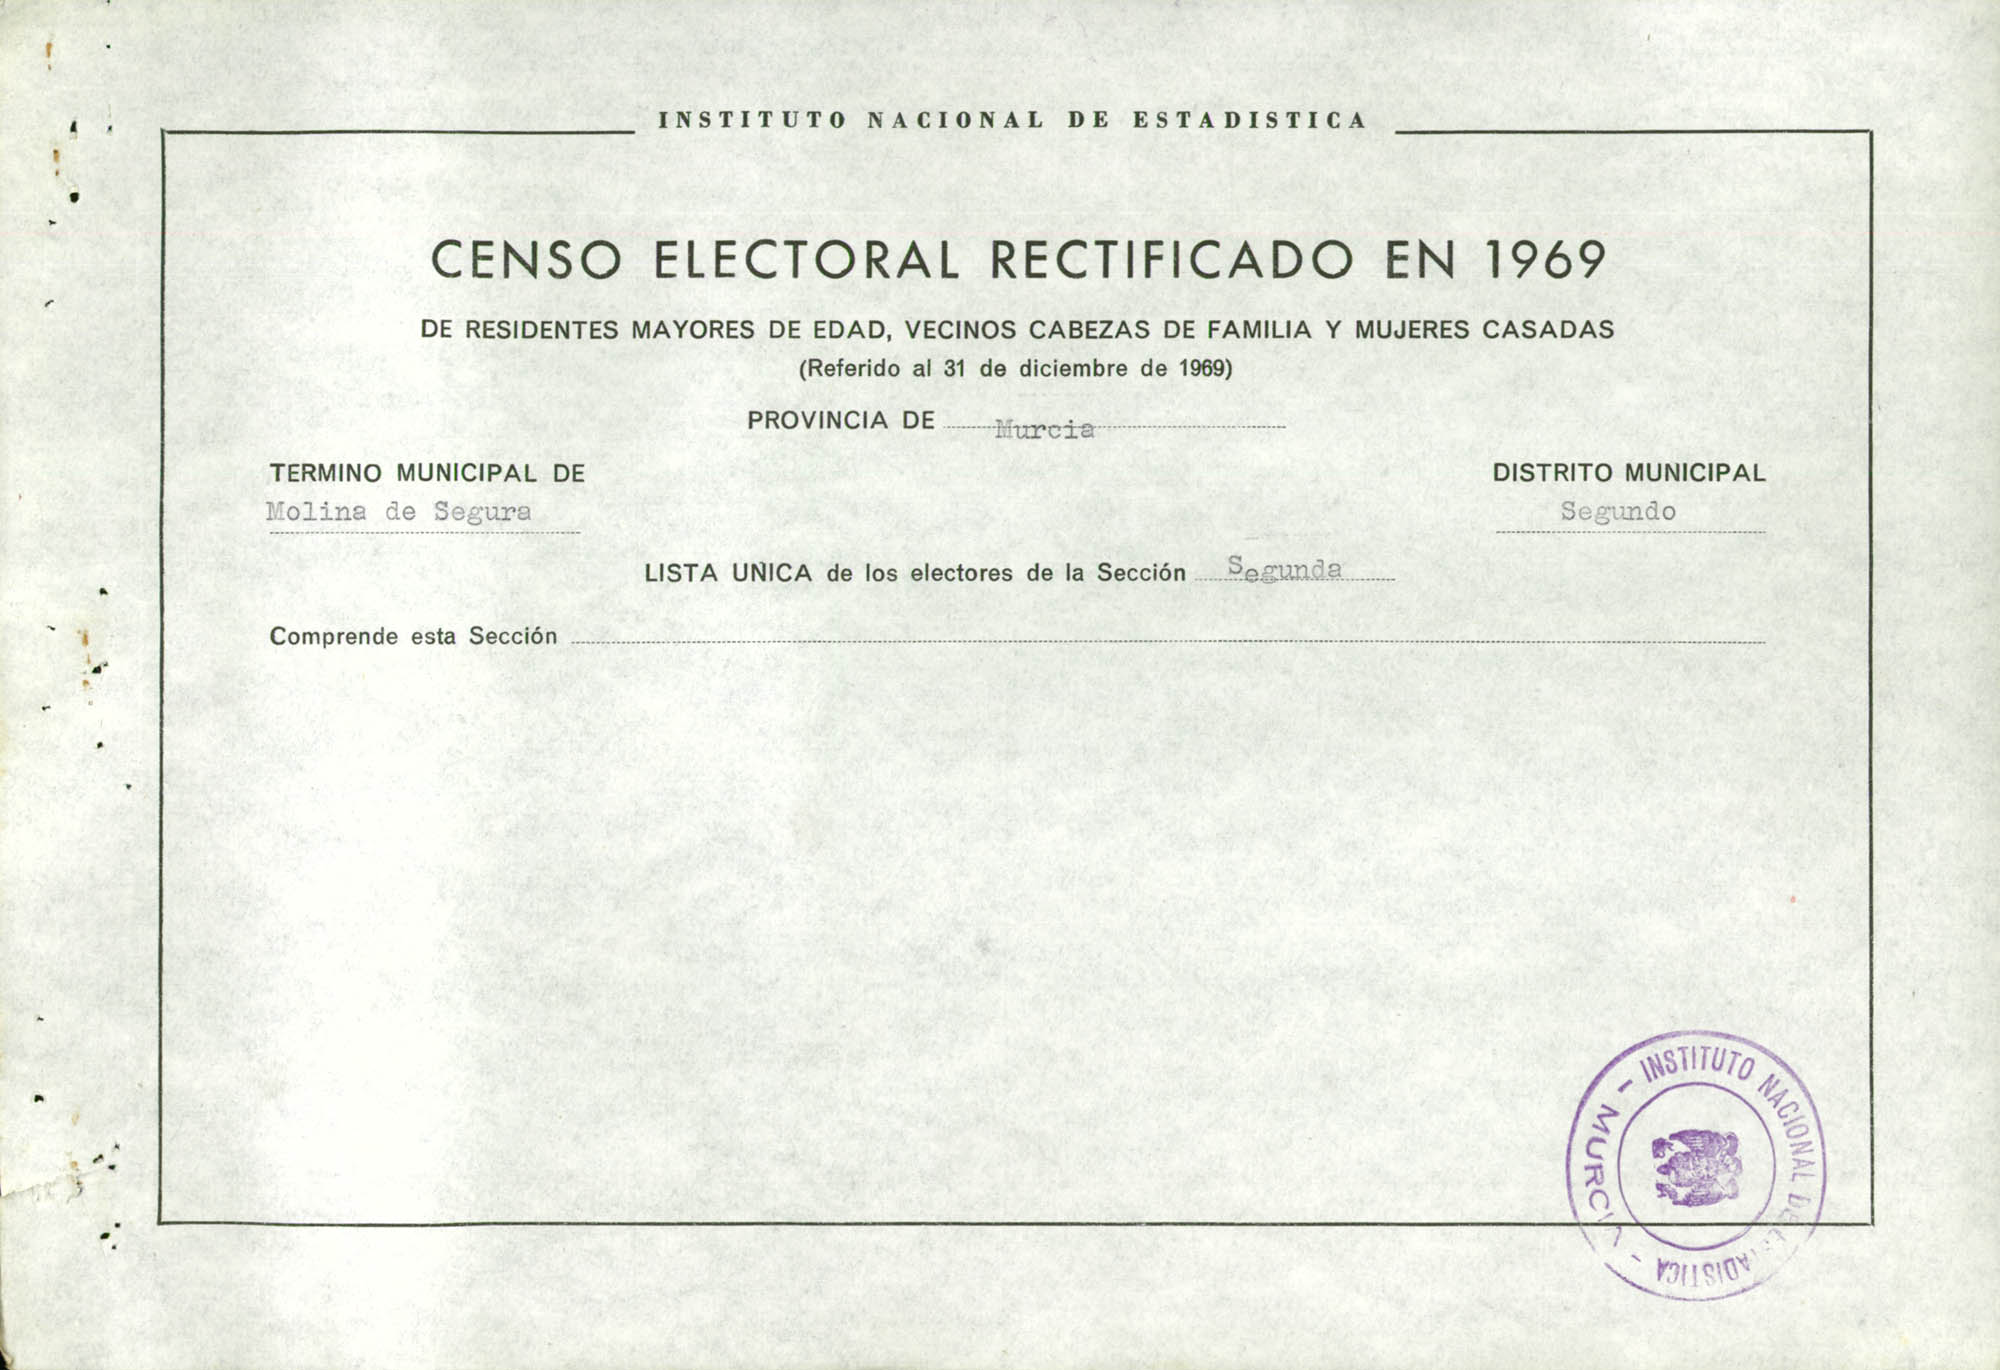 Censo electoral rectificado en 1969: listas definitivas de Molina de Segura, Distrito 2º, sección 2ª.